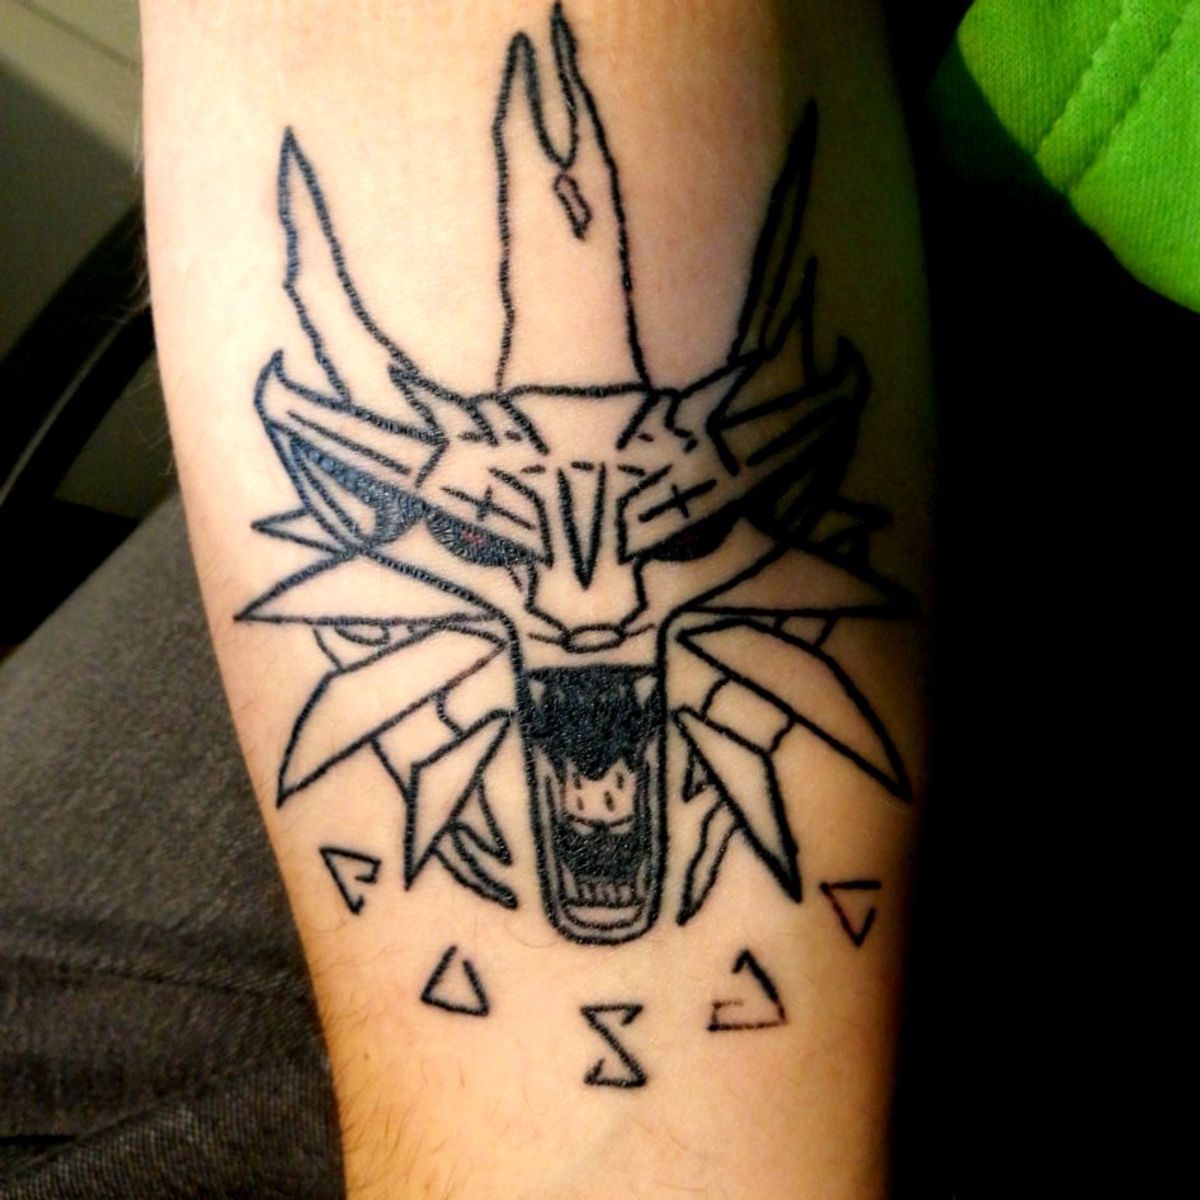 Tattoo uploaded by Damian Gębal • Witcher Tattoo • Tattoodo